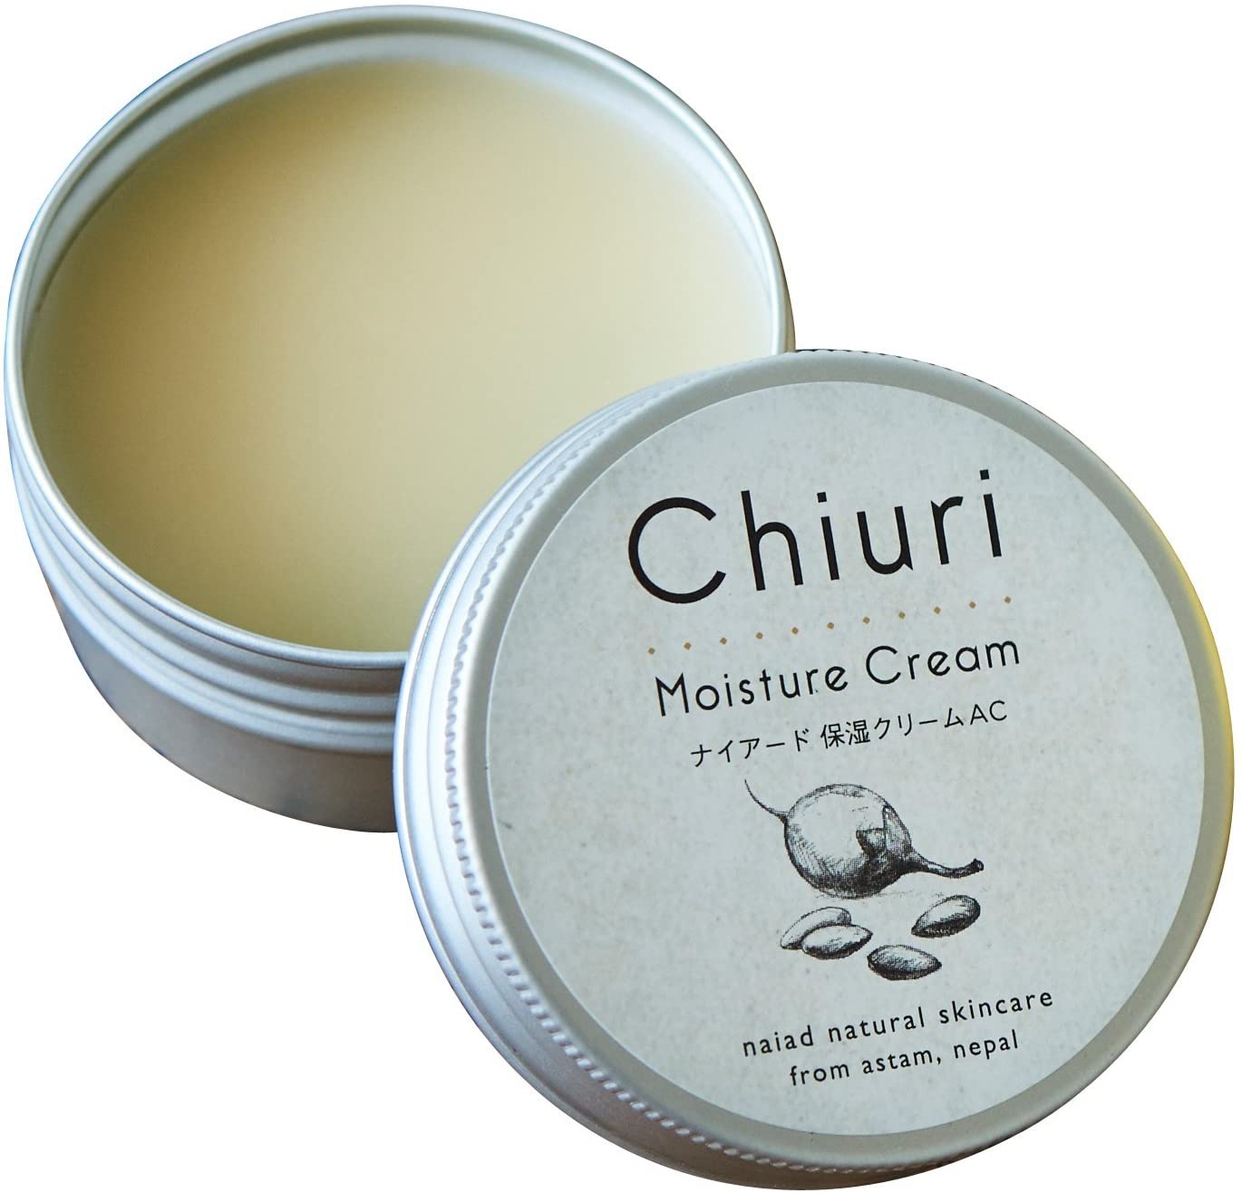 Chiuri(チウリ) モイスチャークリームの商品画像